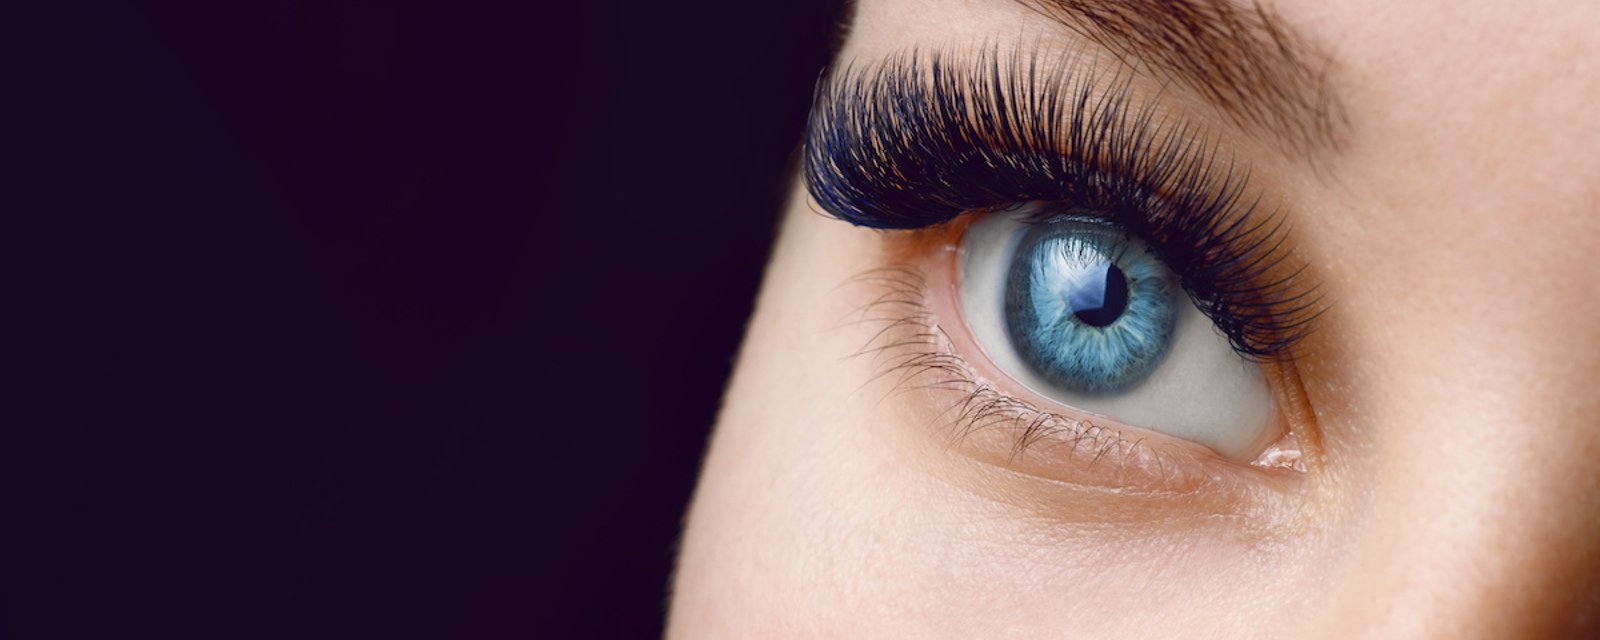 Tous les gens qui ont les  yeux bleus auraient un ancêtre commun, qui a vécu il y a 6 000 ans, minimum